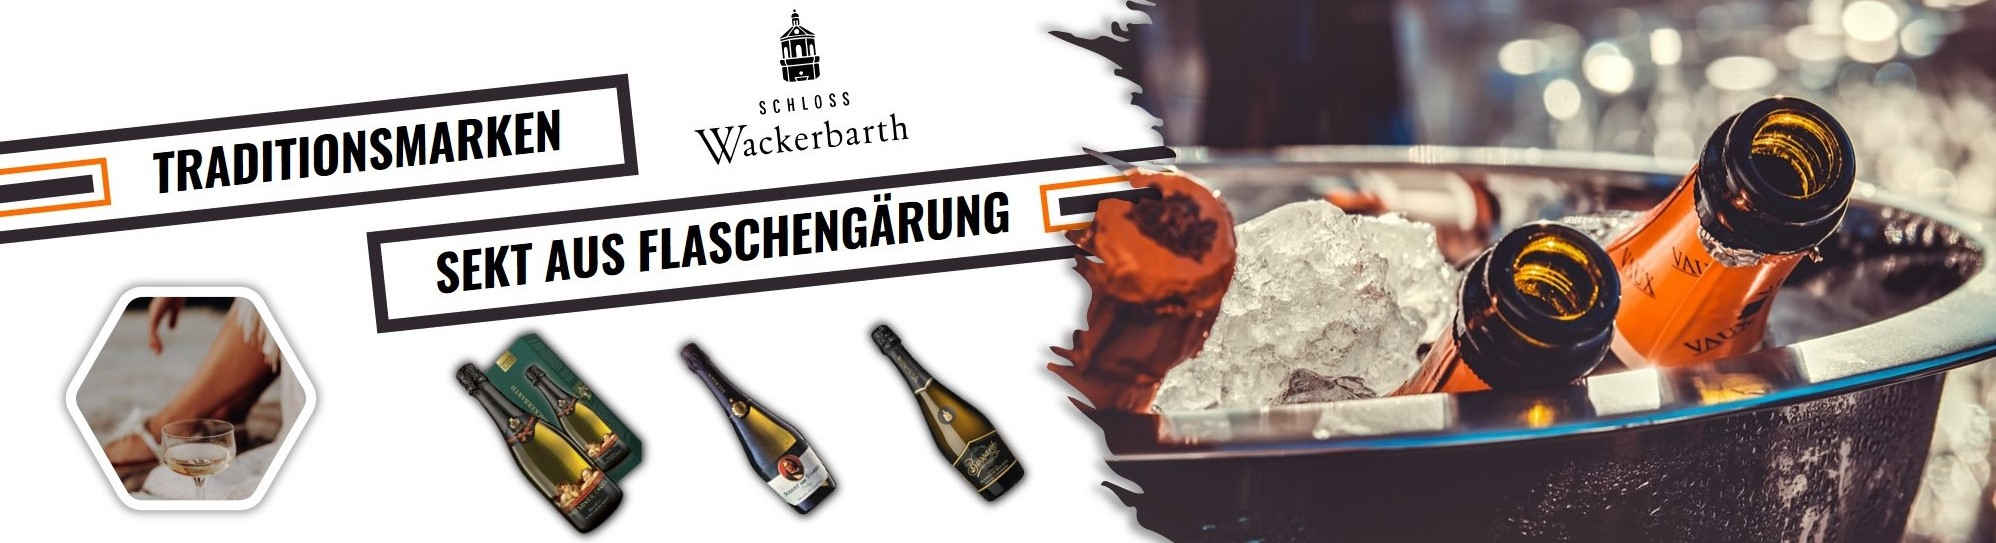 sächsische Sekte aus Flaschengärung kaufen & die besten Sektkeltereien aus der Region online entdecken